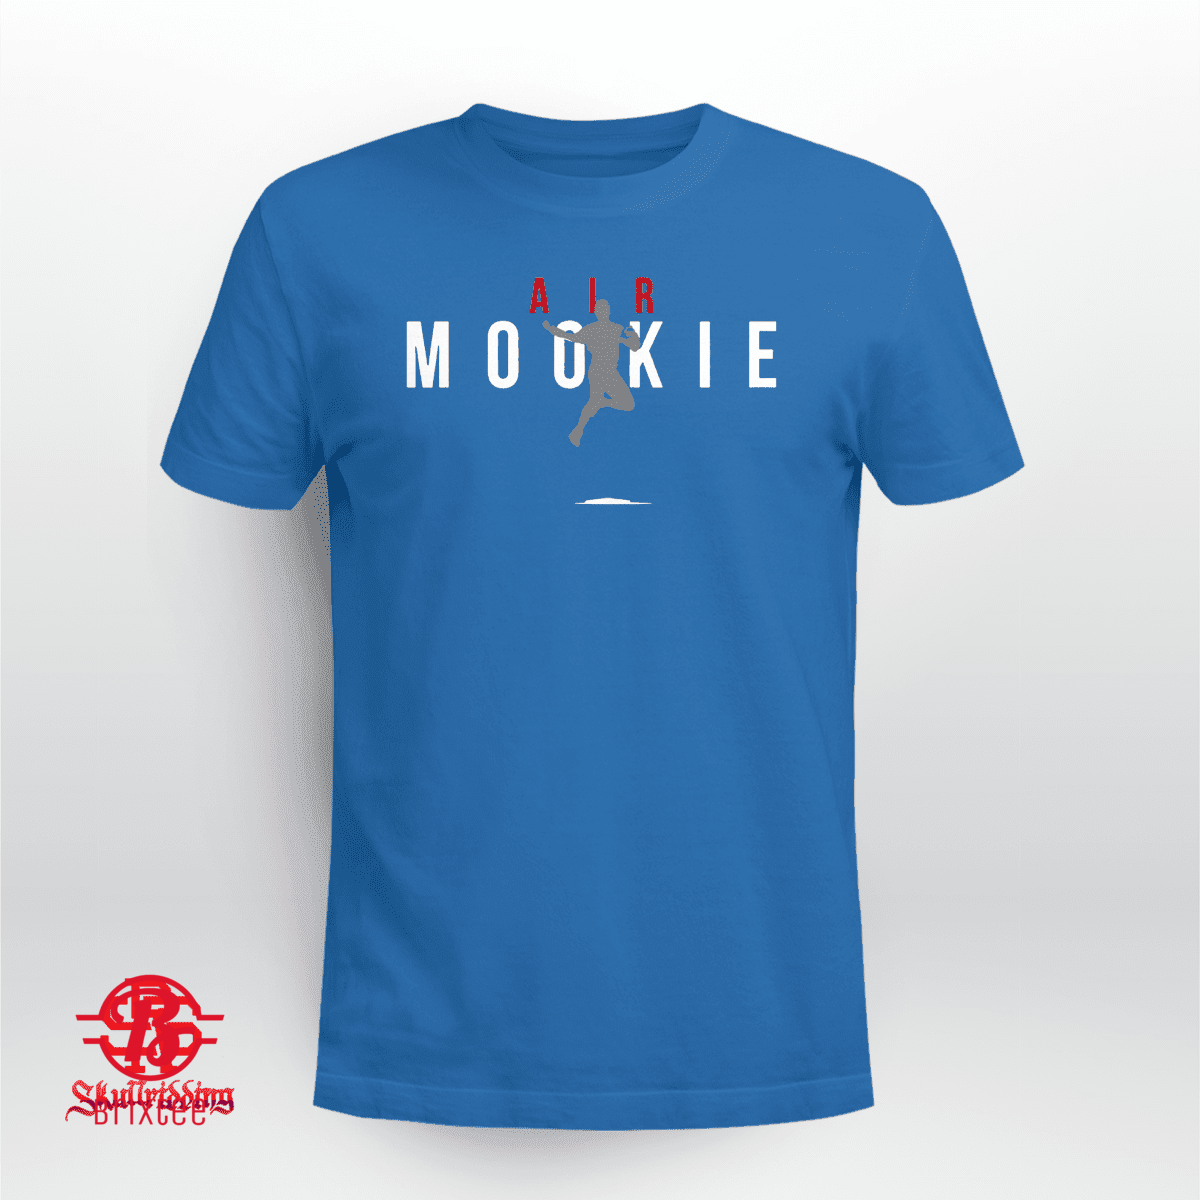 Mookie Betts Air Mookie - Los Angeles Dodgers